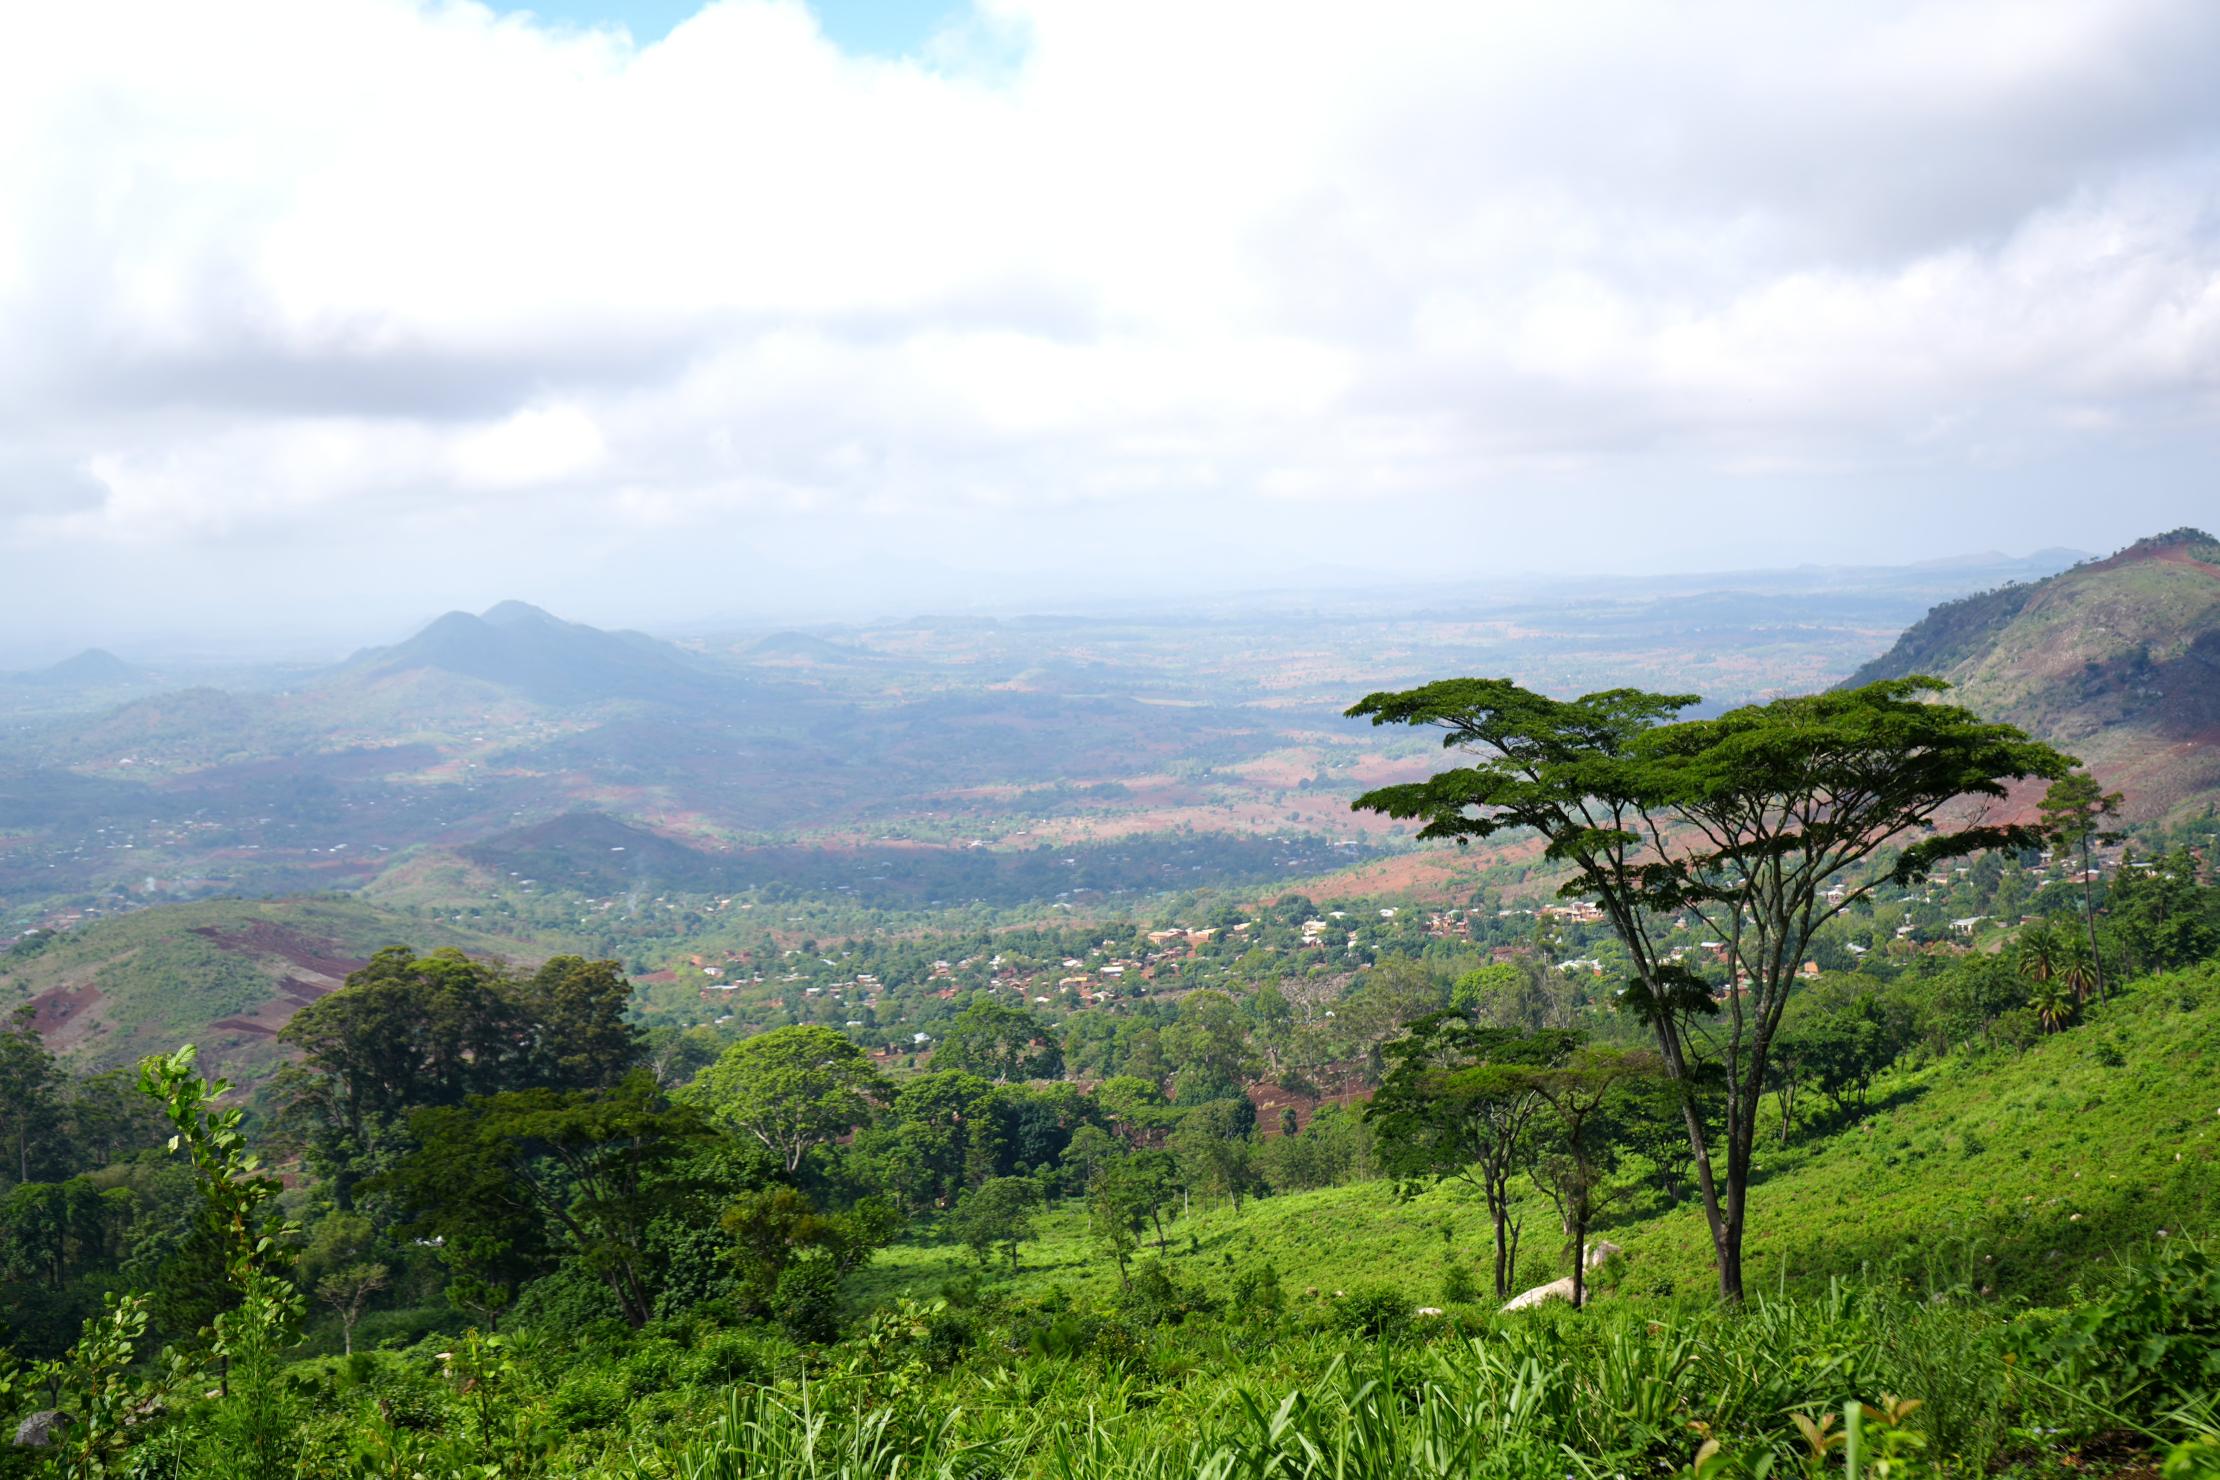 A mountain landscape in Malawi